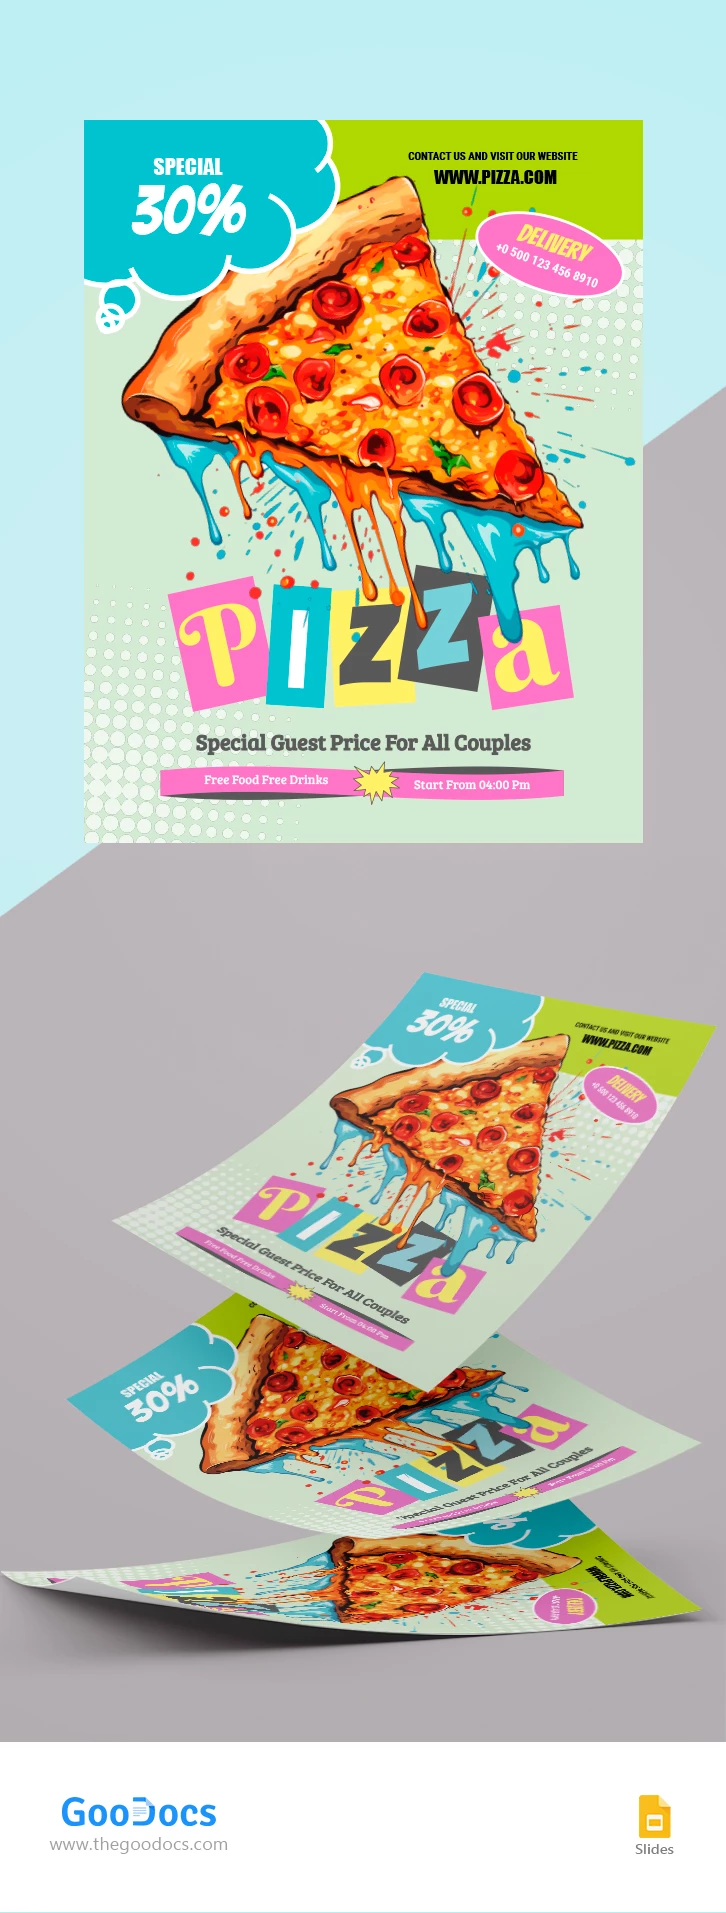 Volantino della pizza - free Google Docs Template - 10067264